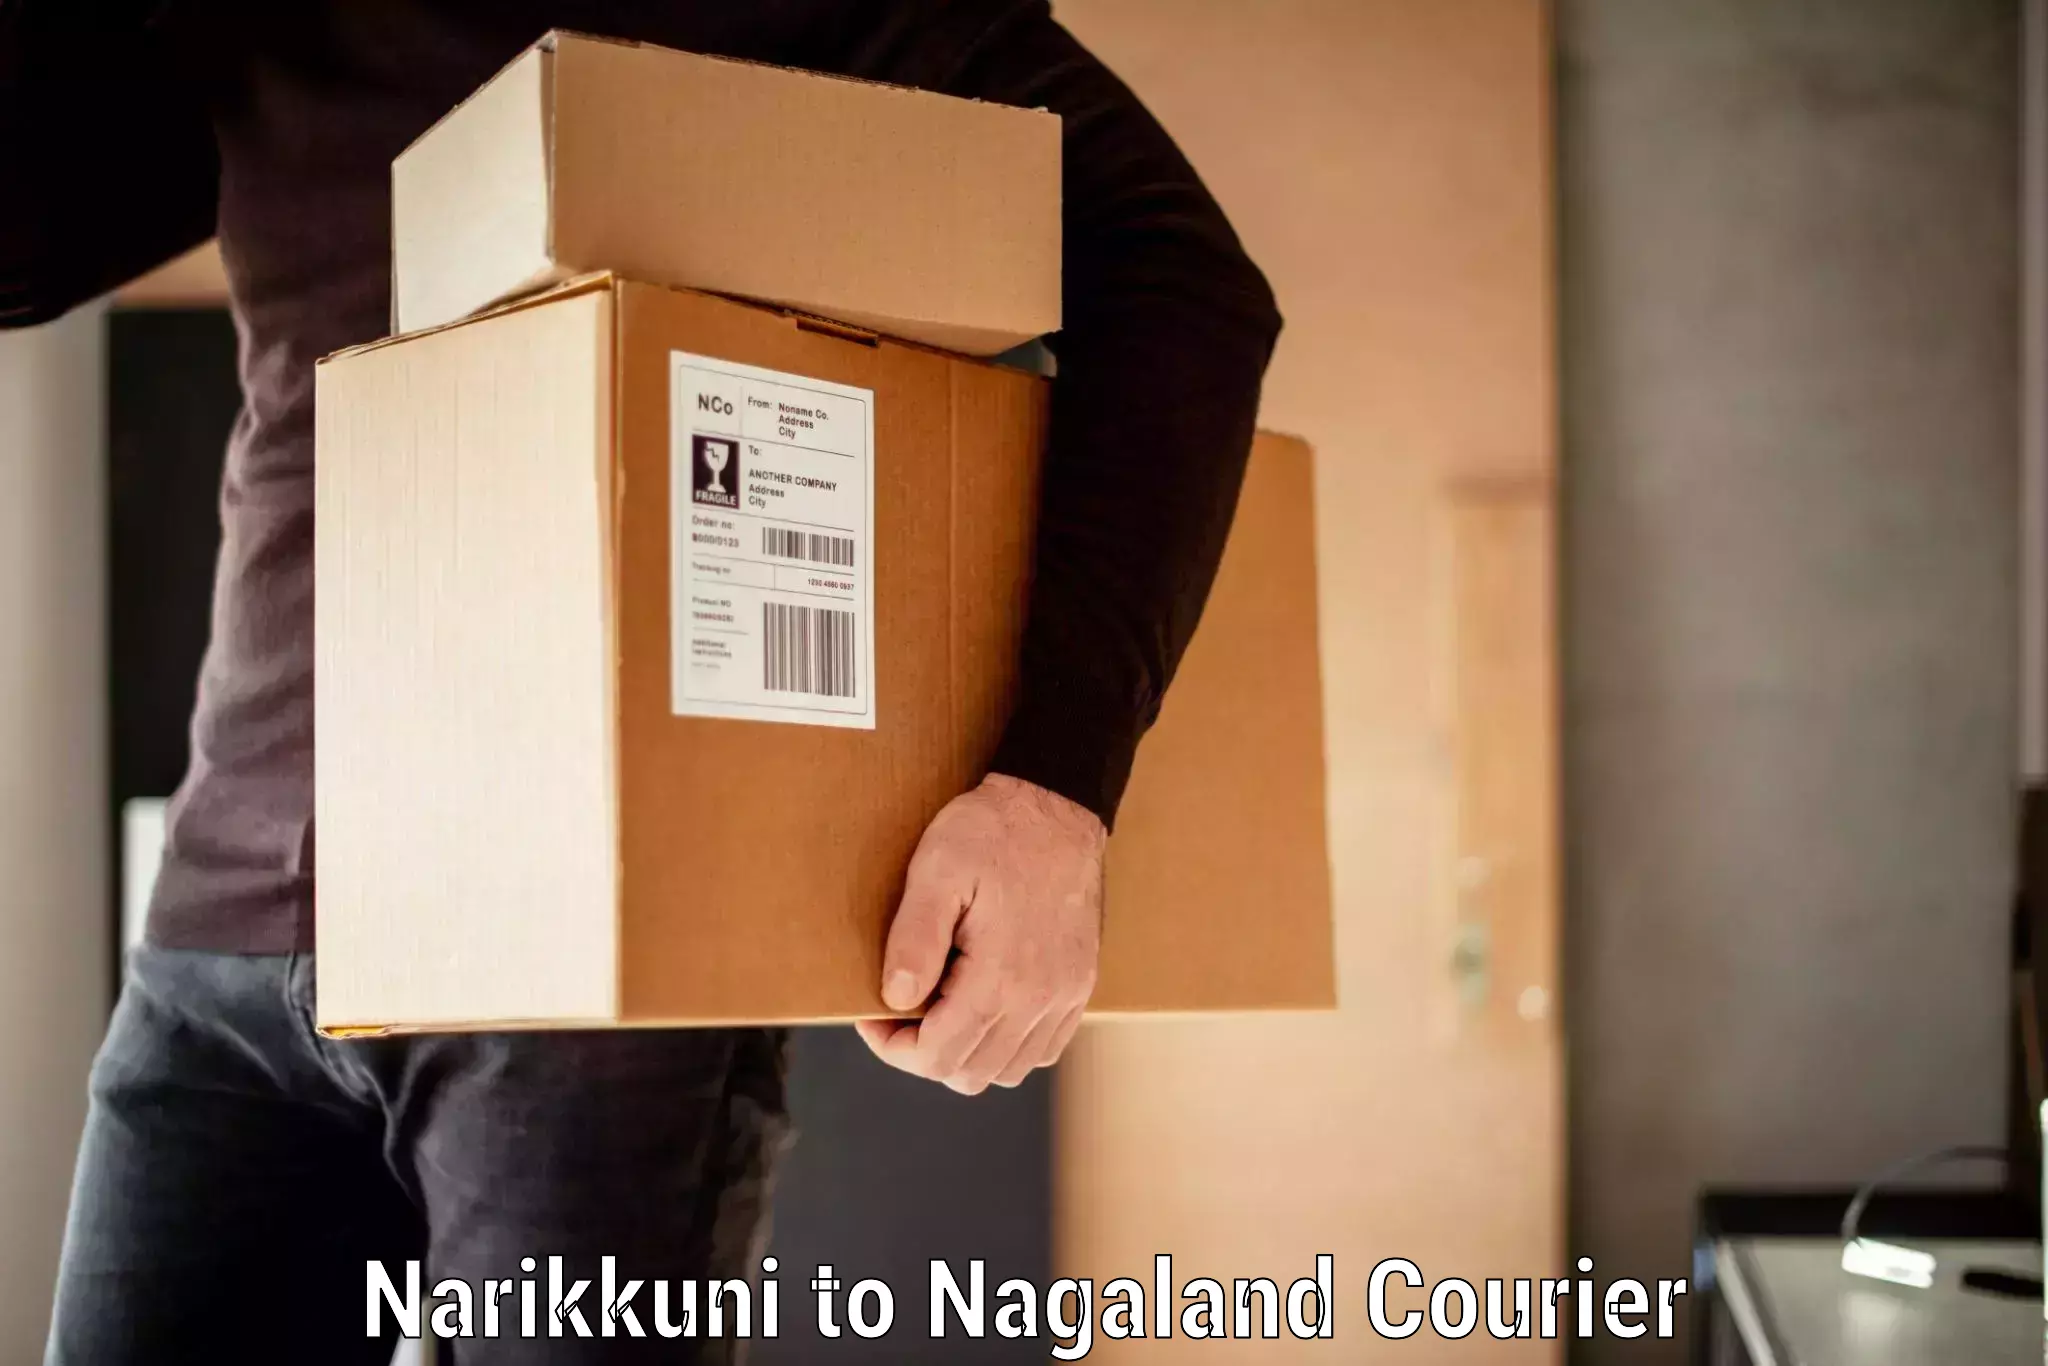 Budget-friendly baggage courier Narikkuni to Nagaland